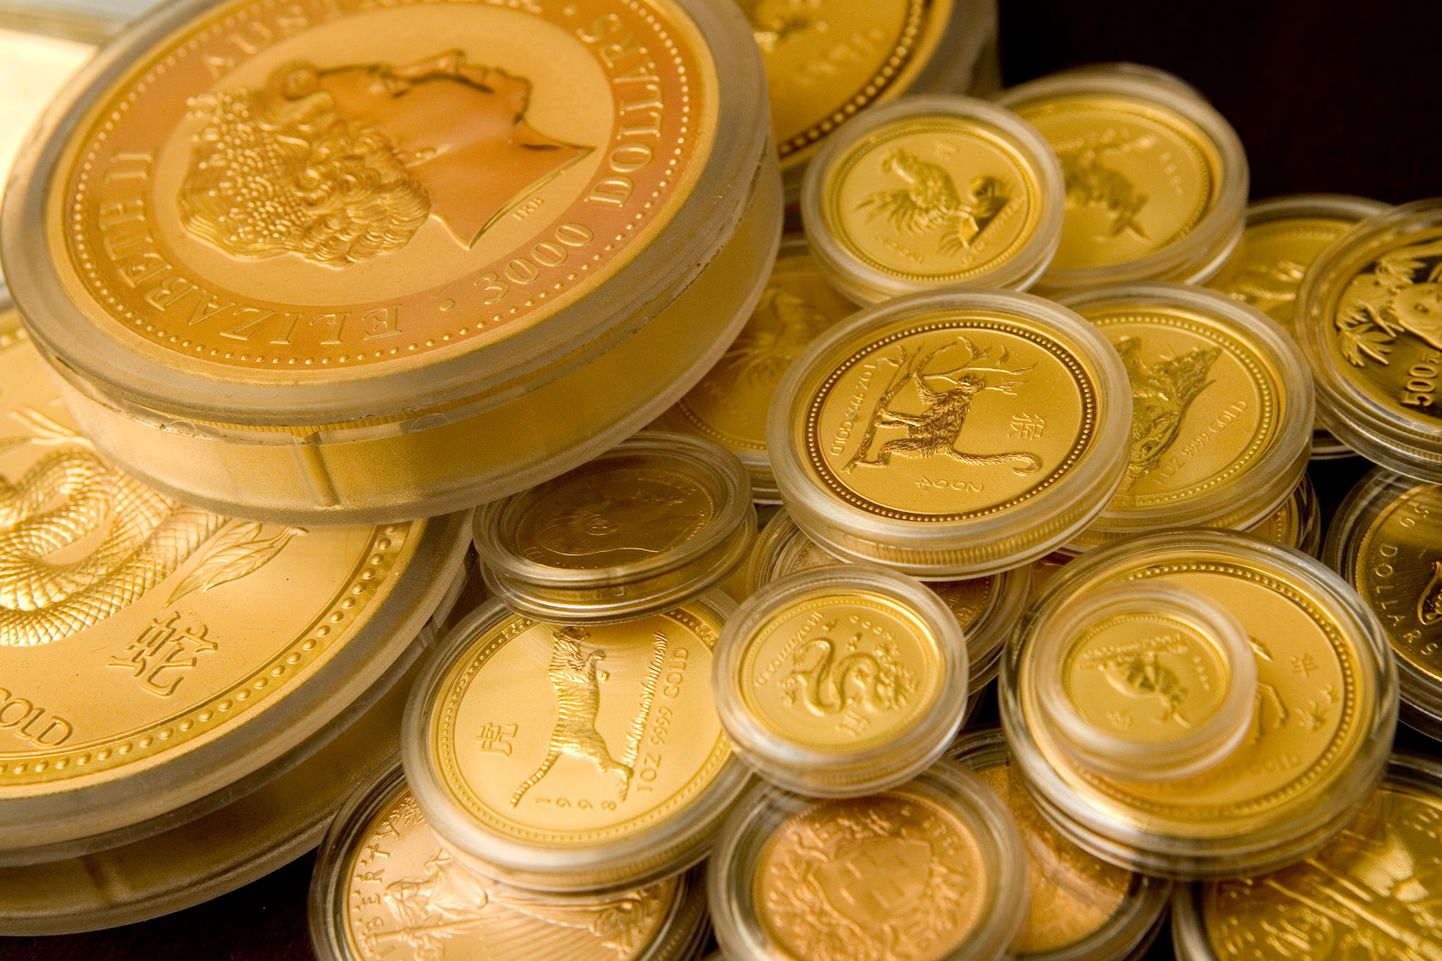 Pildil kuldmündid Tavid valuutavahetuses.